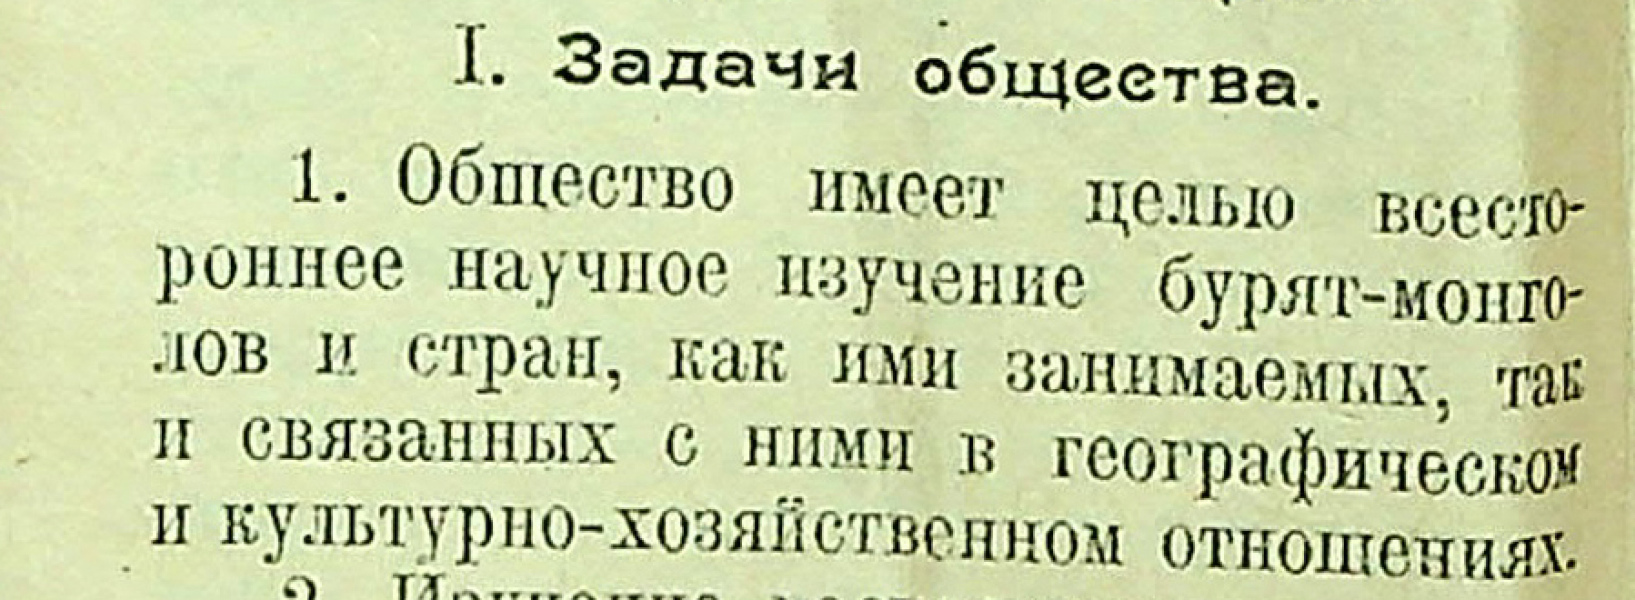 19 апреля 1924 г. 100 лет со дня организации Бурят-Монгольского научного общества им. Д. Банзарова